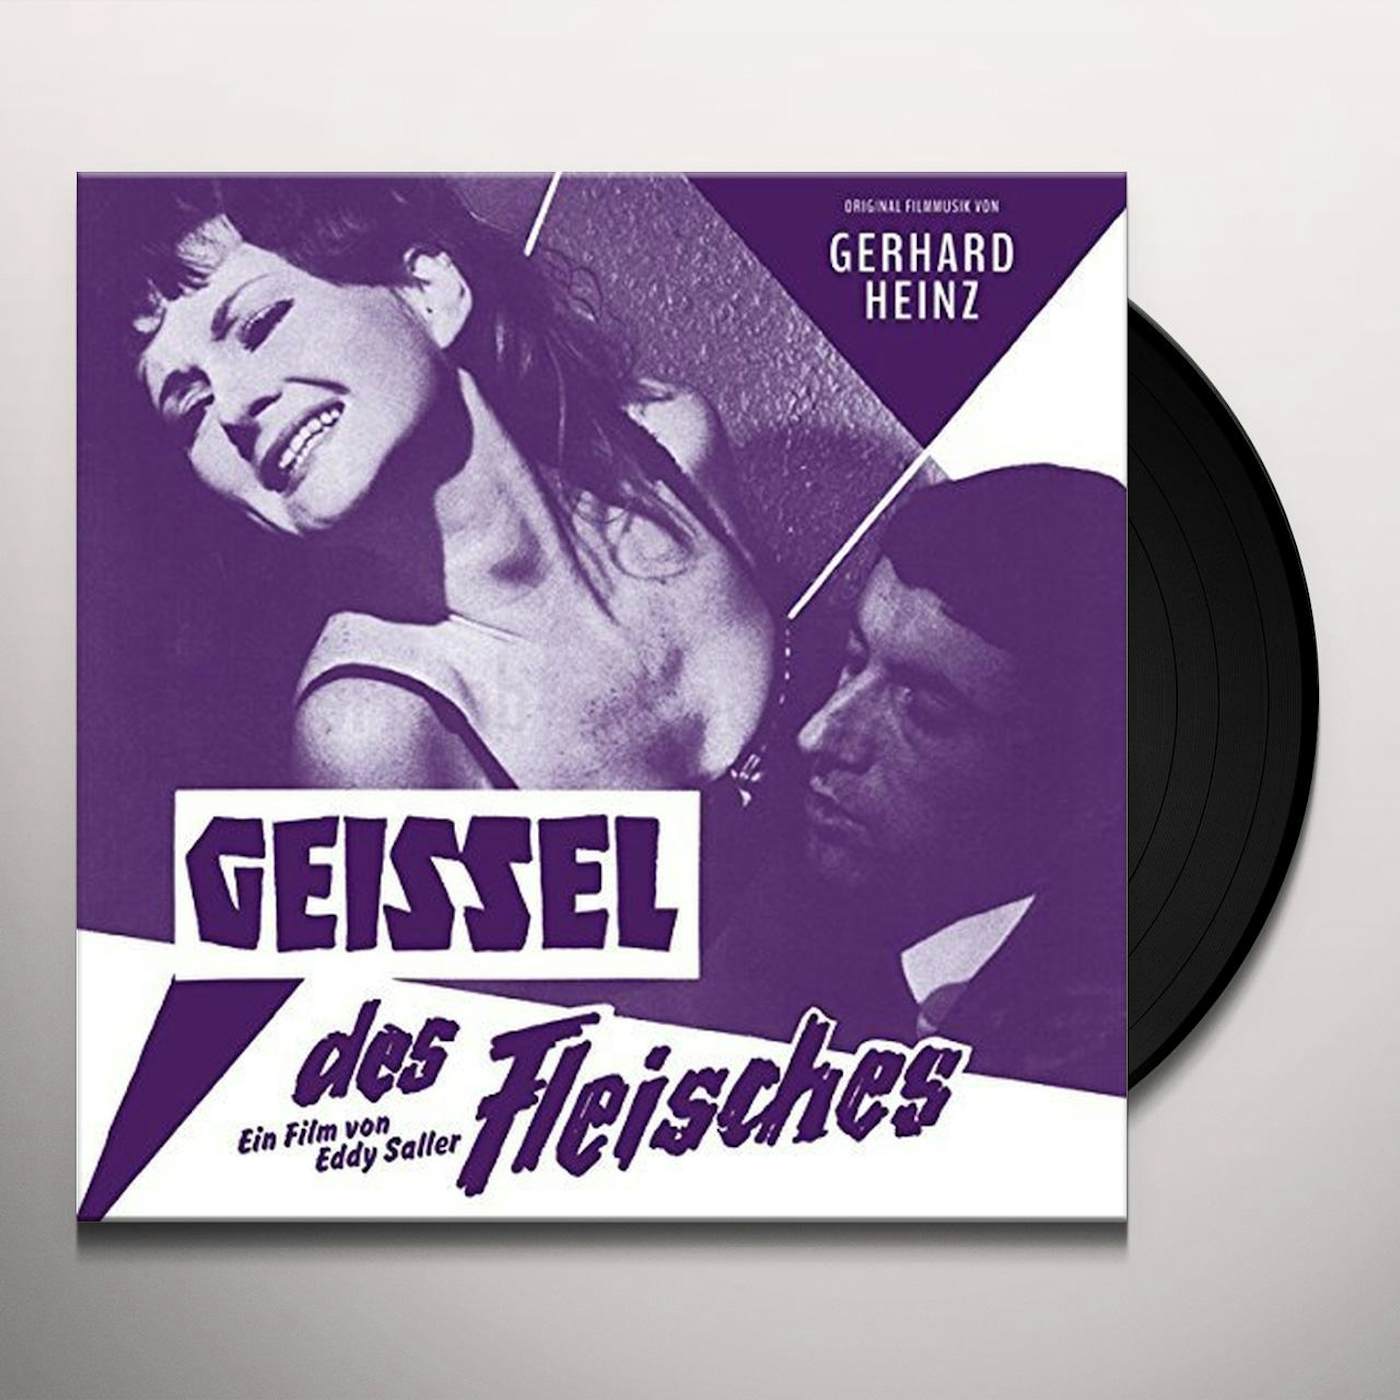 Gerhard Heinz GEISSEL DES FLEISCHES (TORMENT OF FLESH) Vinyl Record